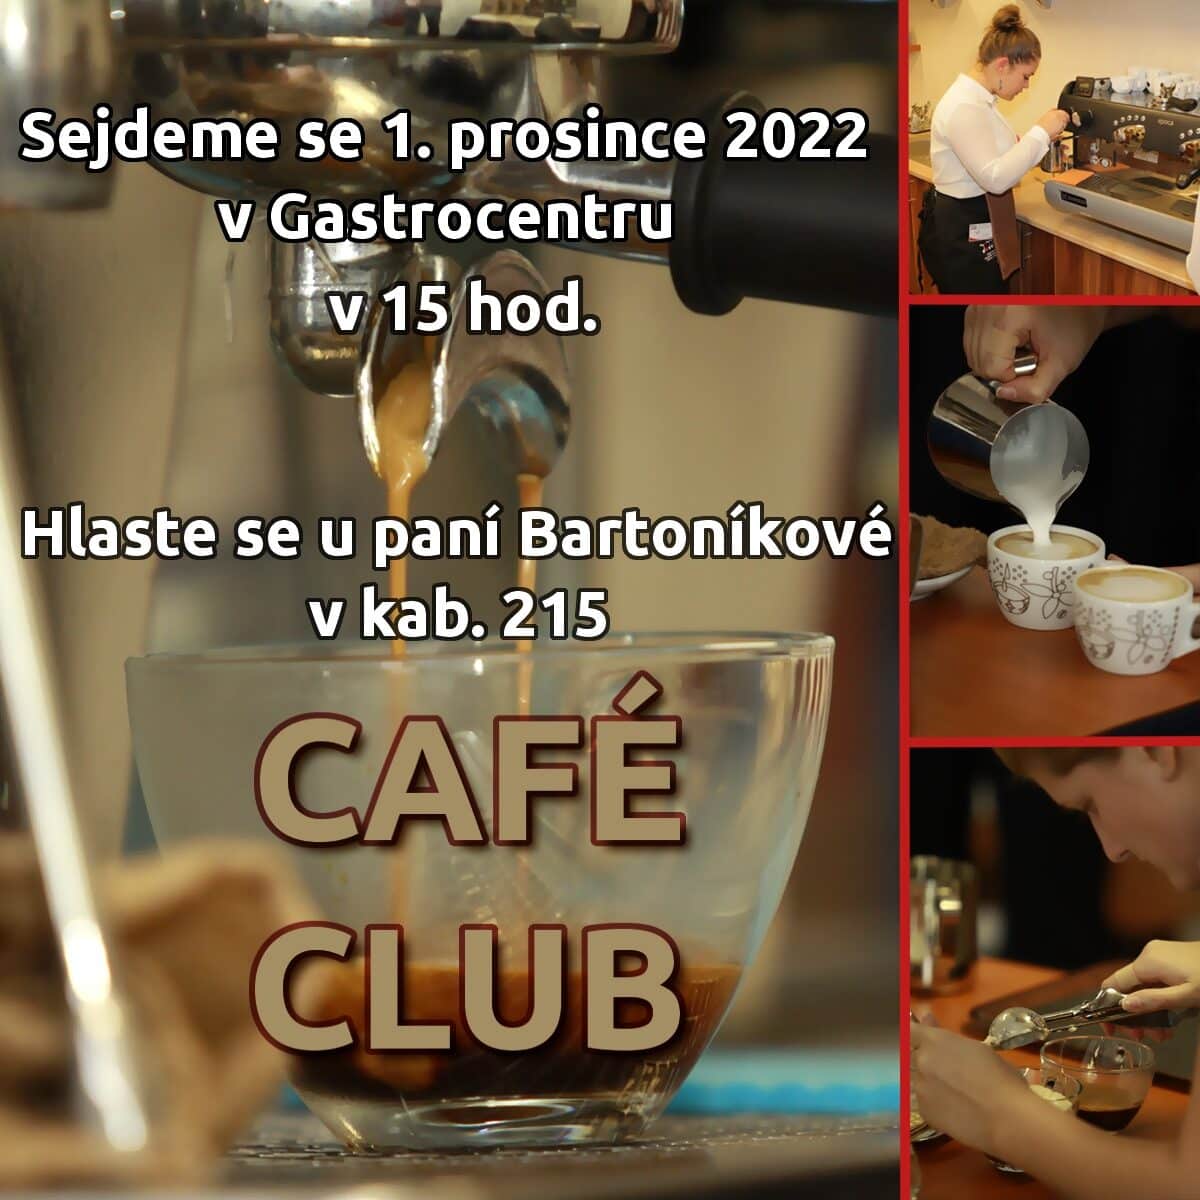 Café club